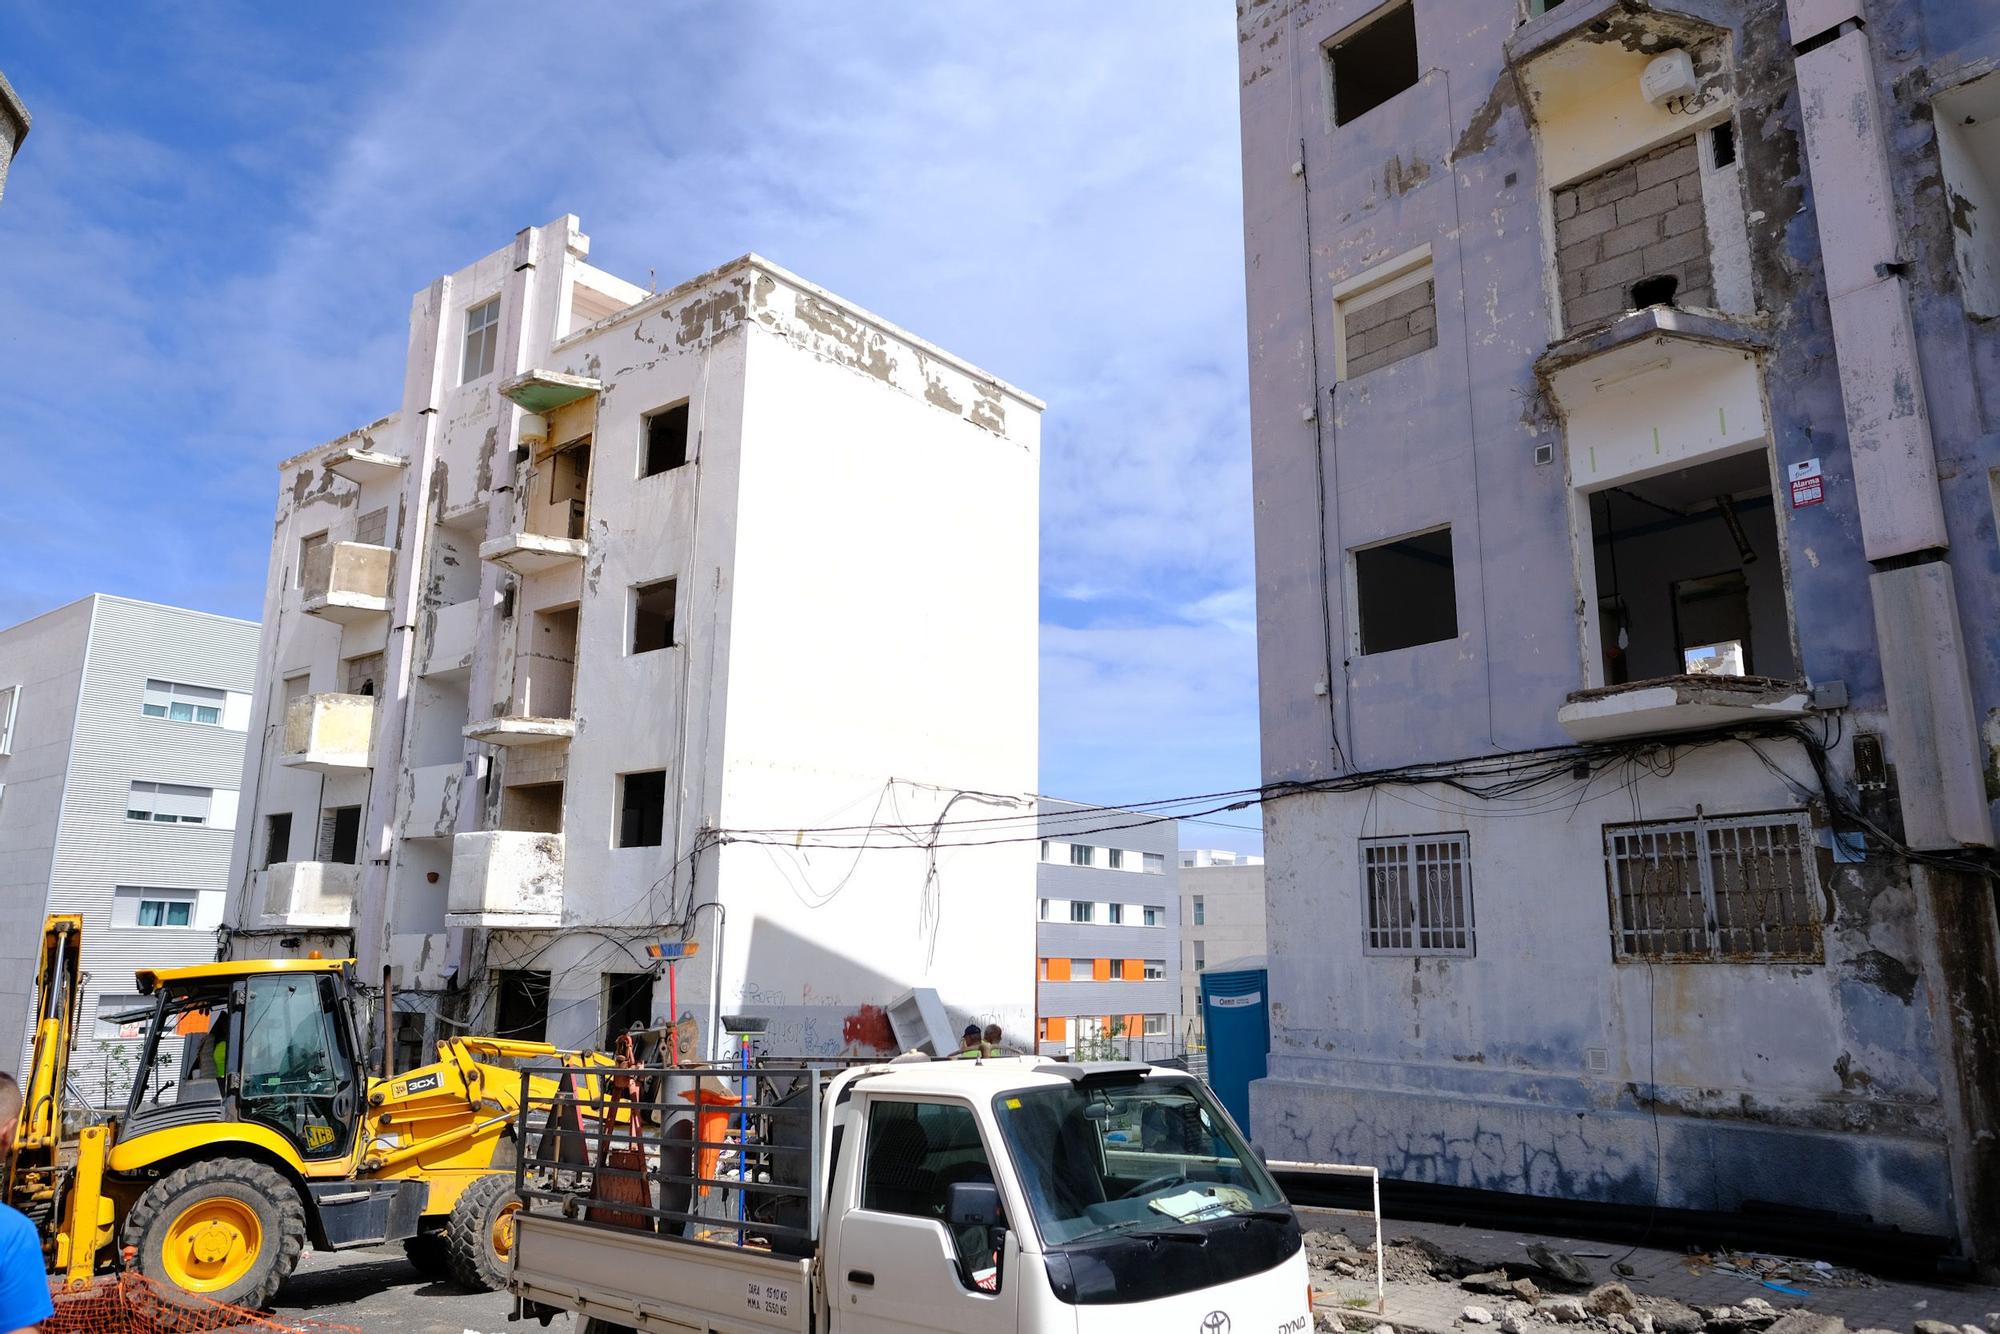 Derriban dos bloques de casas en Tamaraceite para evitar que entren okupas